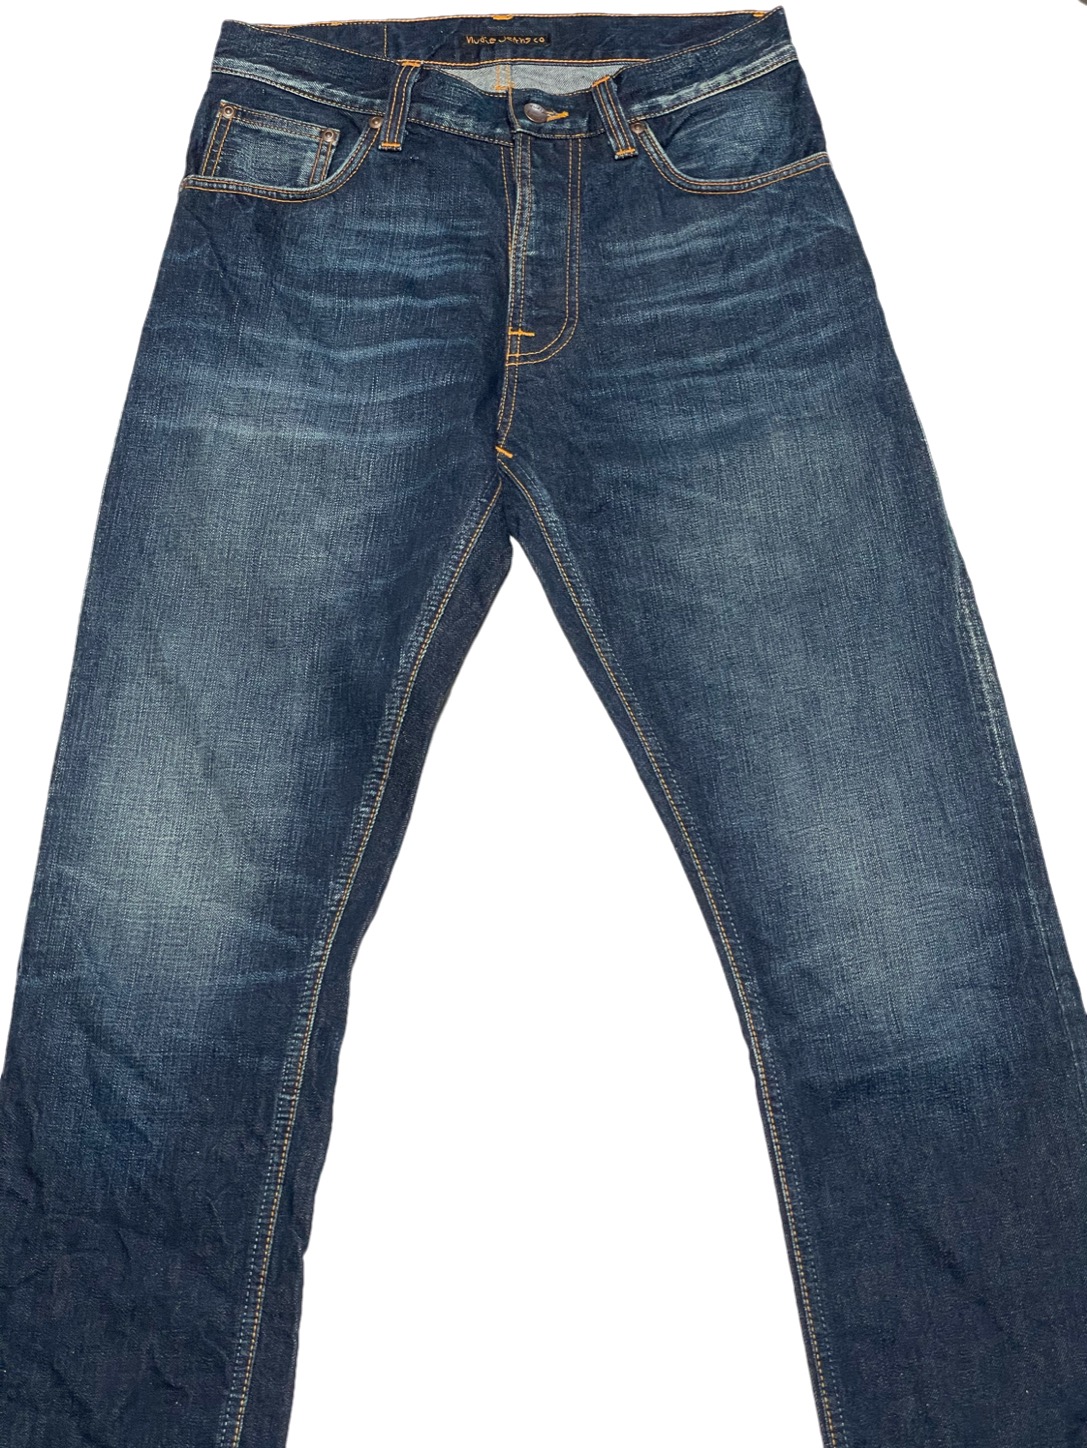 MADE IN ITALY製 Nudie Jeans オーガニックコットンデニムパンツ